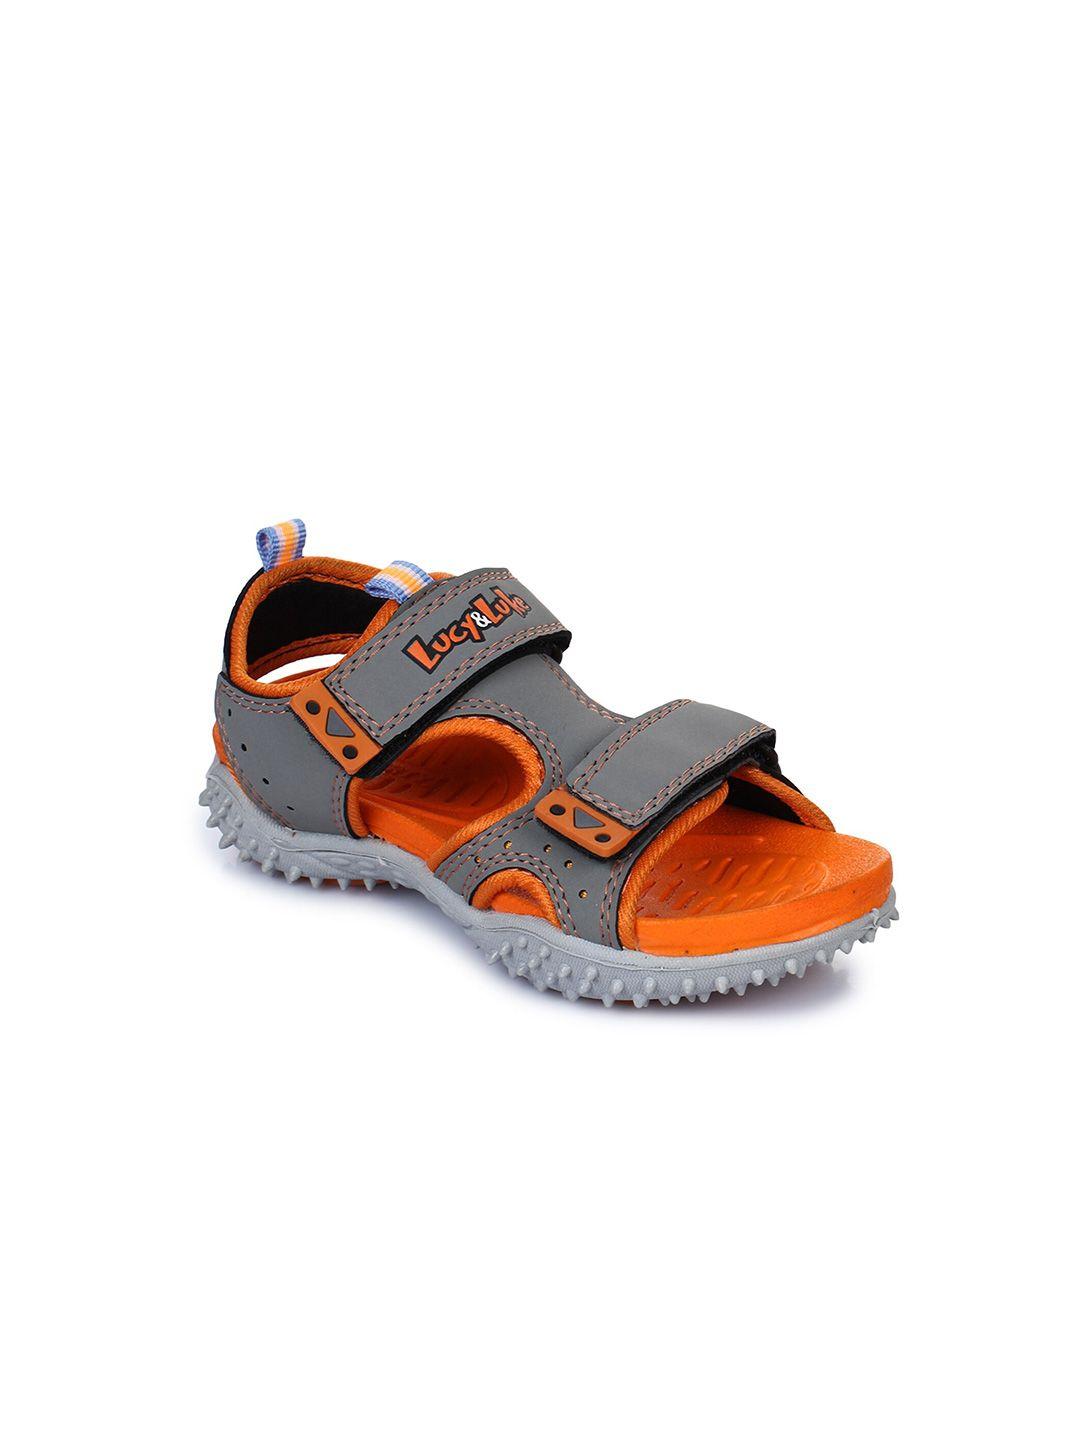 liberty kids grey & orange comfort sandals